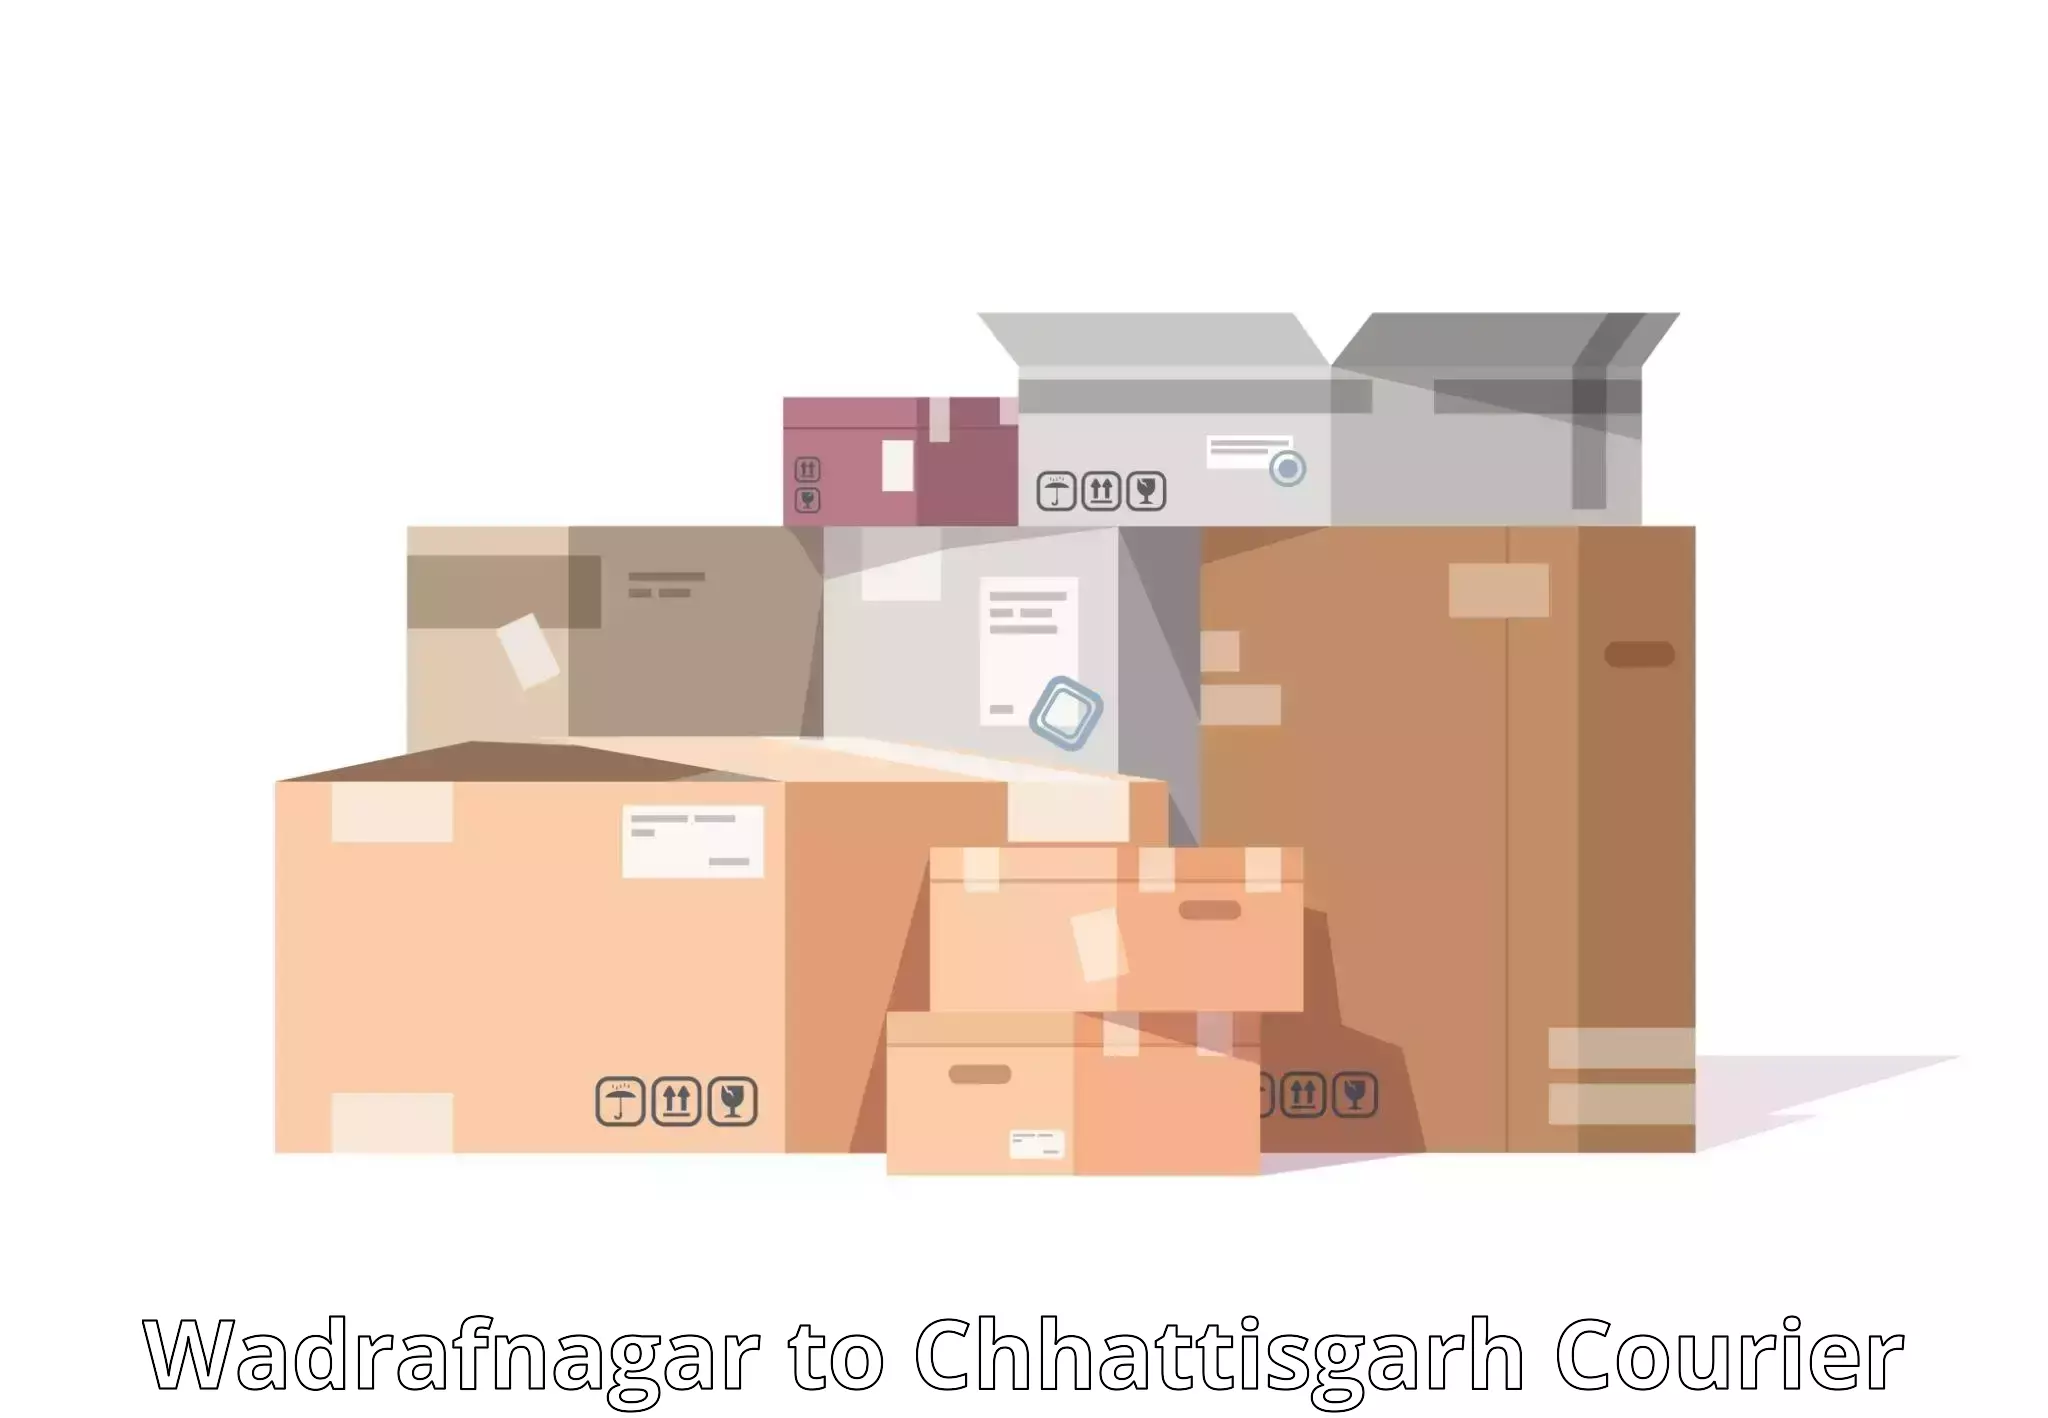 High-speed logistics services Wadrafnagar to Chhattisgarh